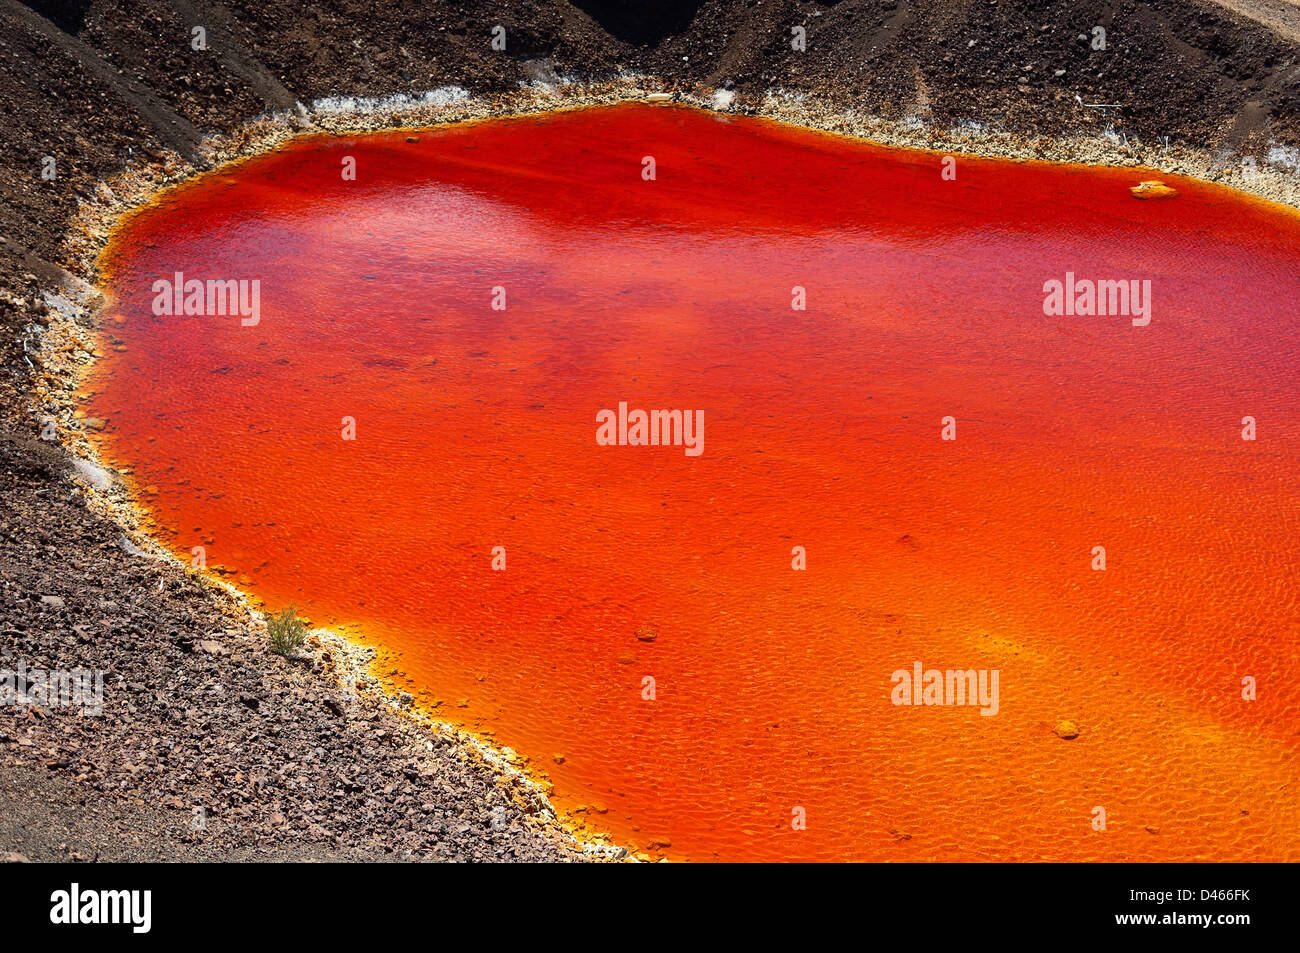 Detalle del estanque de agua ácida rojo en São Domingos Mina, una mina a cielo abierto abandonada en Mertola, Alentejo, Portugal. Foto de stock